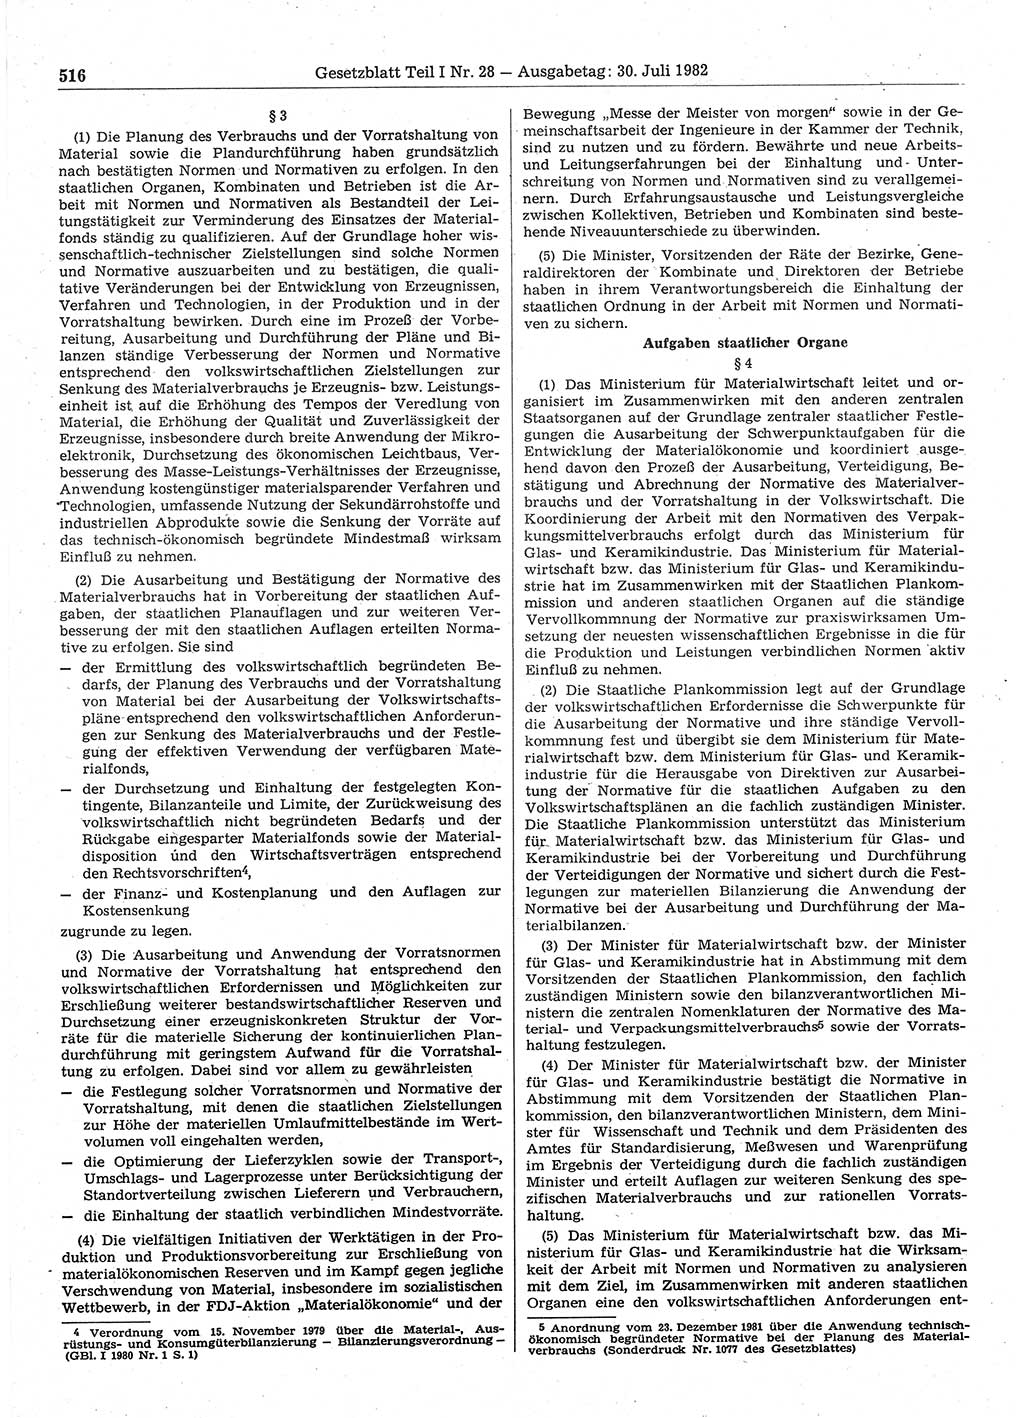 Gesetzblatt (GBl.) der Deutschen Demokratischen Republik (DDR) Teil Ⅰ 1982, Seite 516 (GBl. DDR Ⅰ 1982, S. 516)